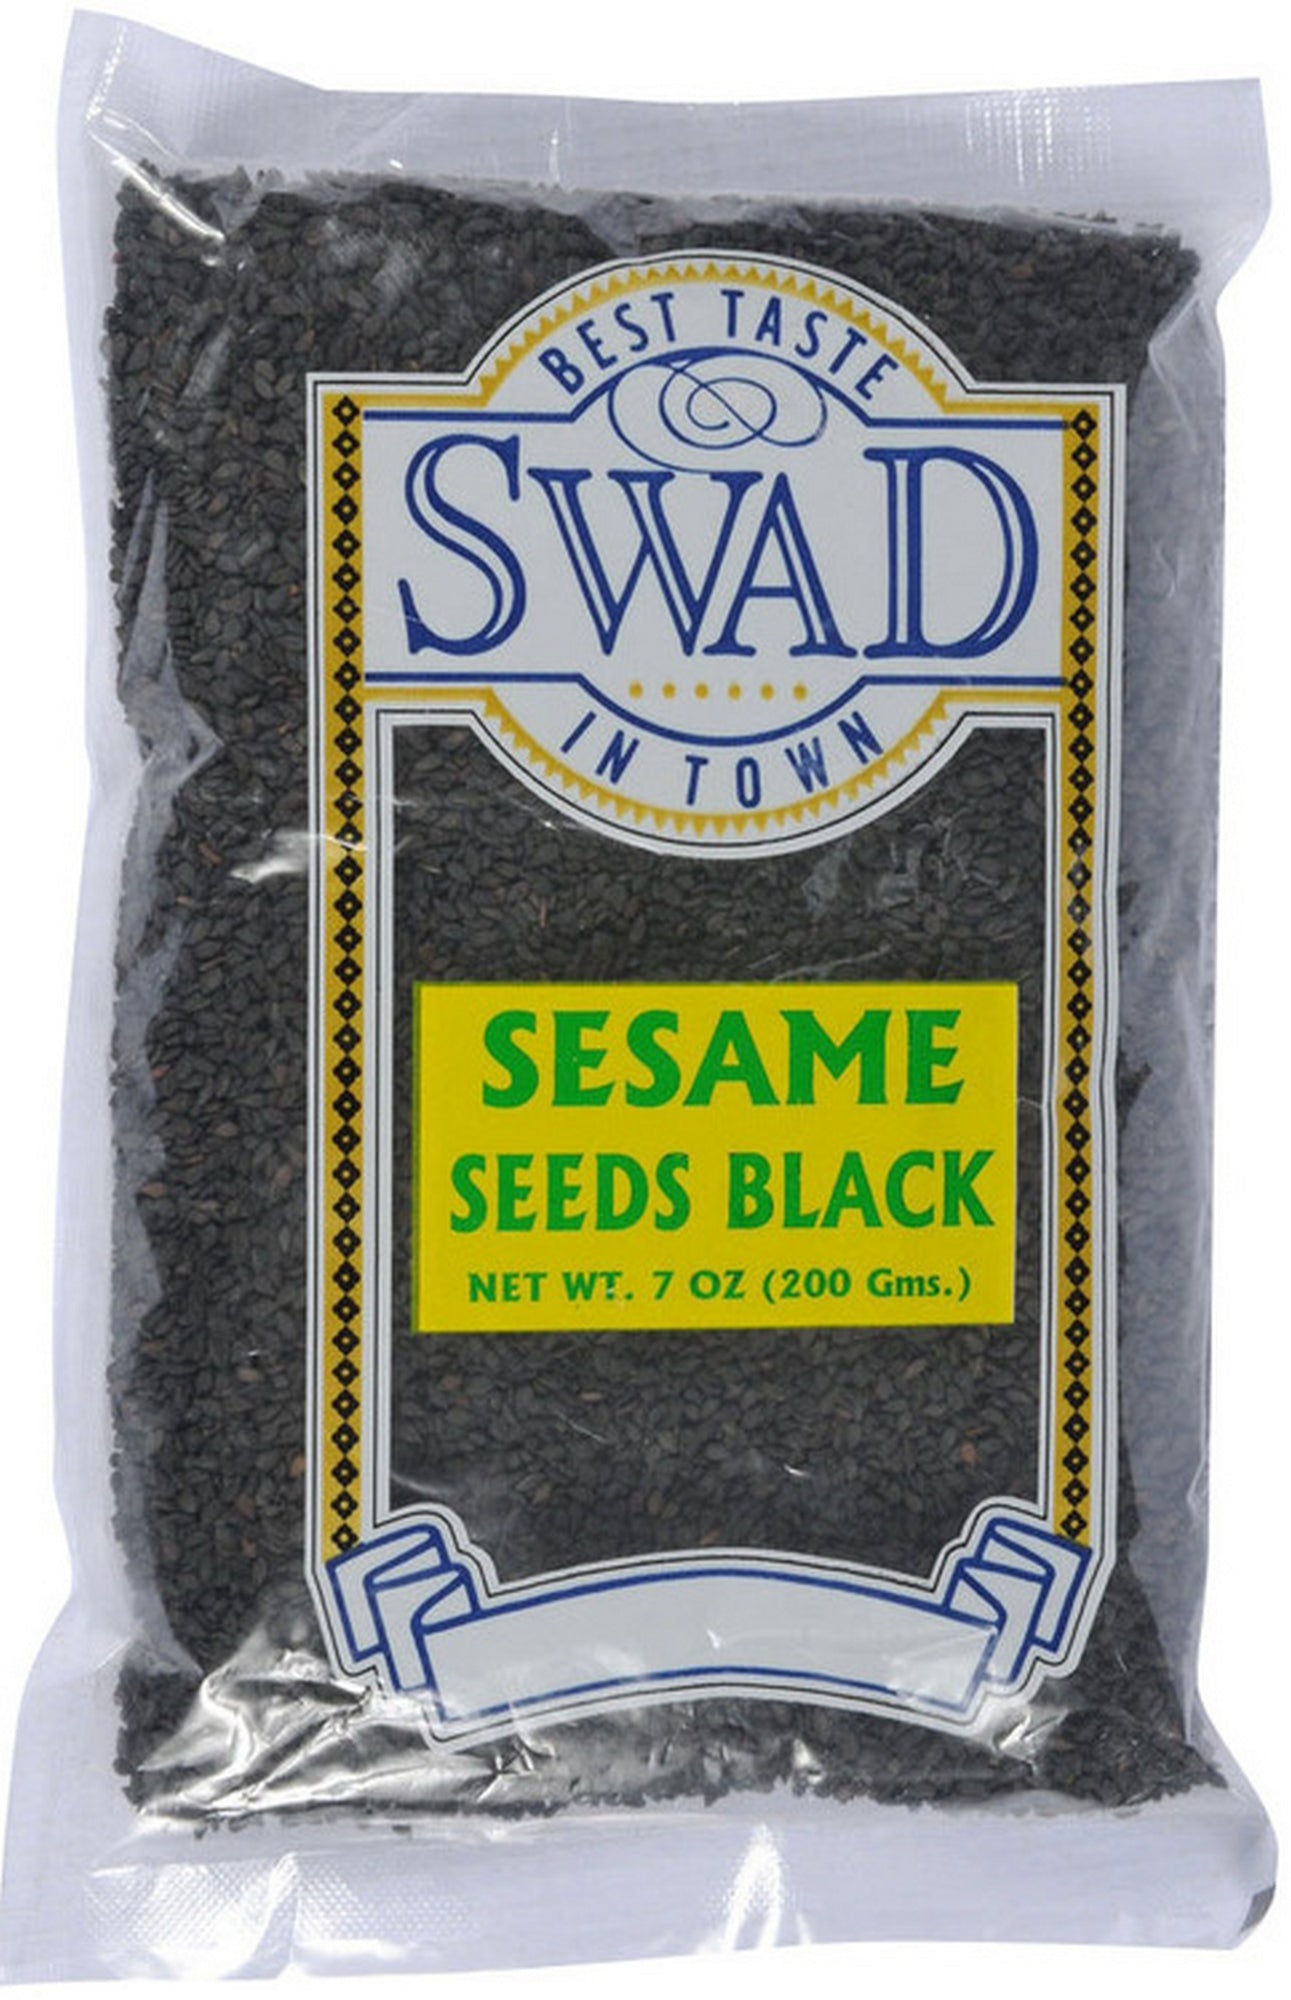 Swad Sesame Seed Black